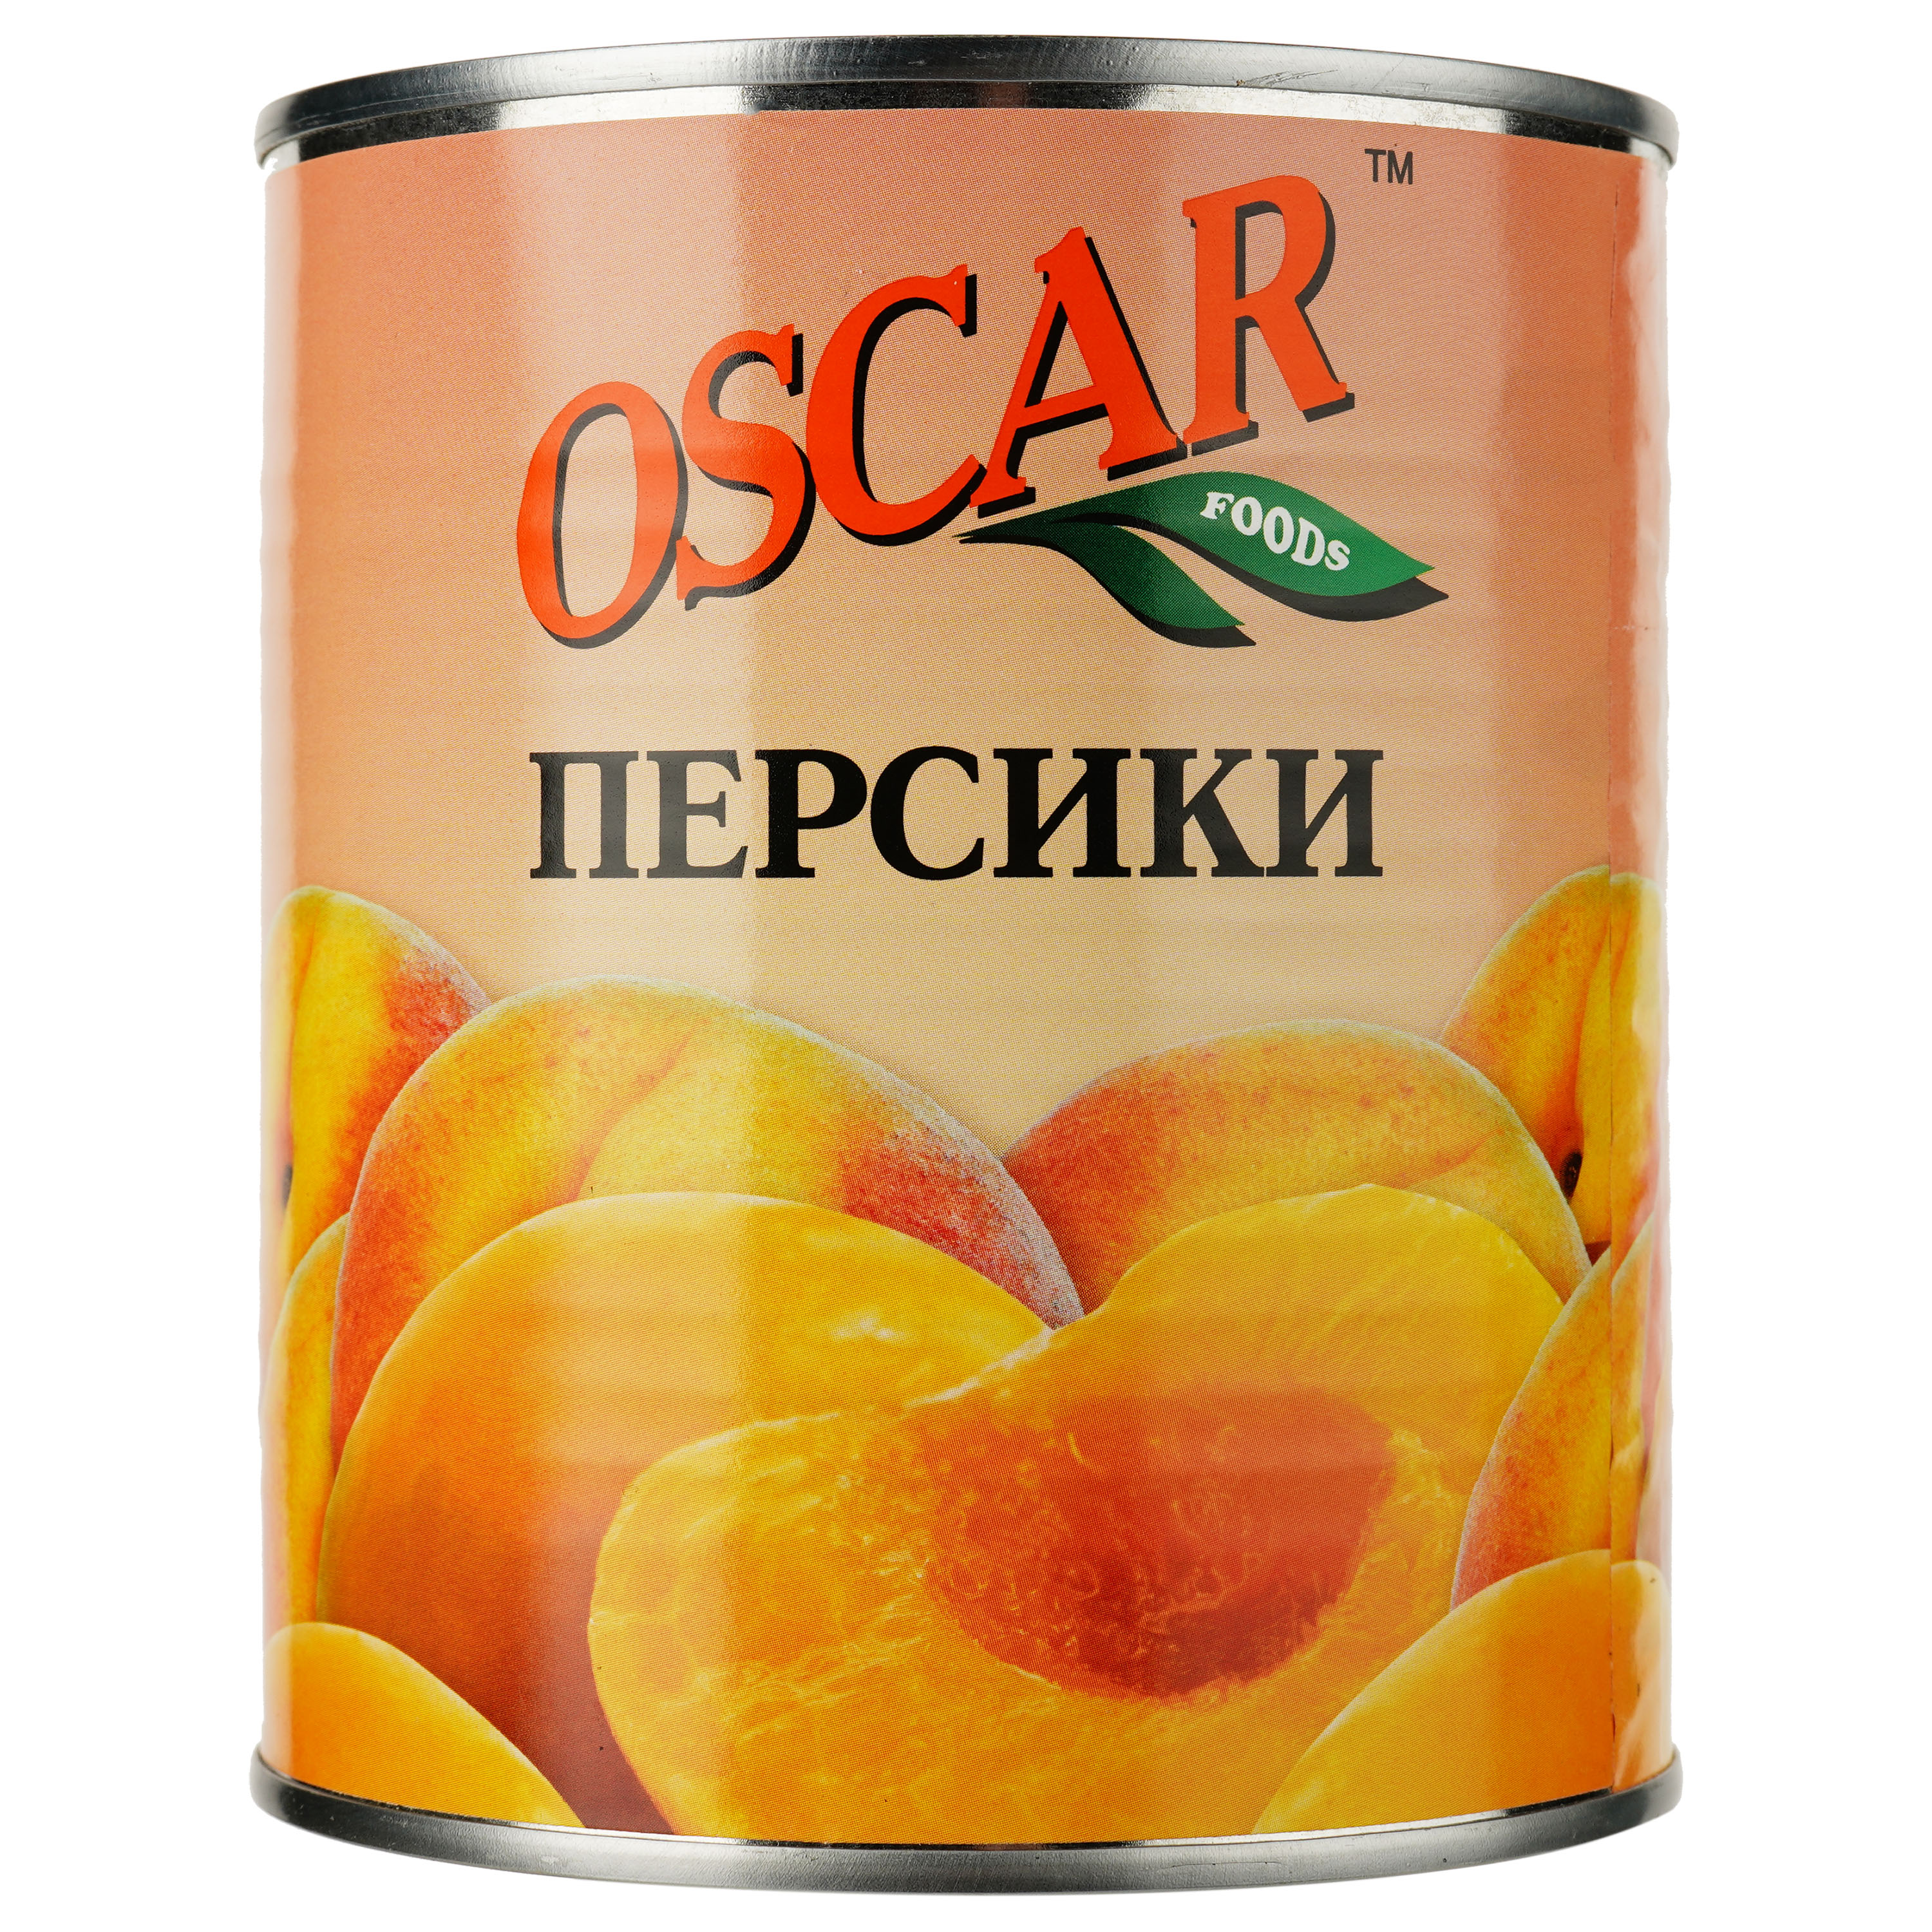 Персики Oscar половинками, 850 мл (232377) - фото 2